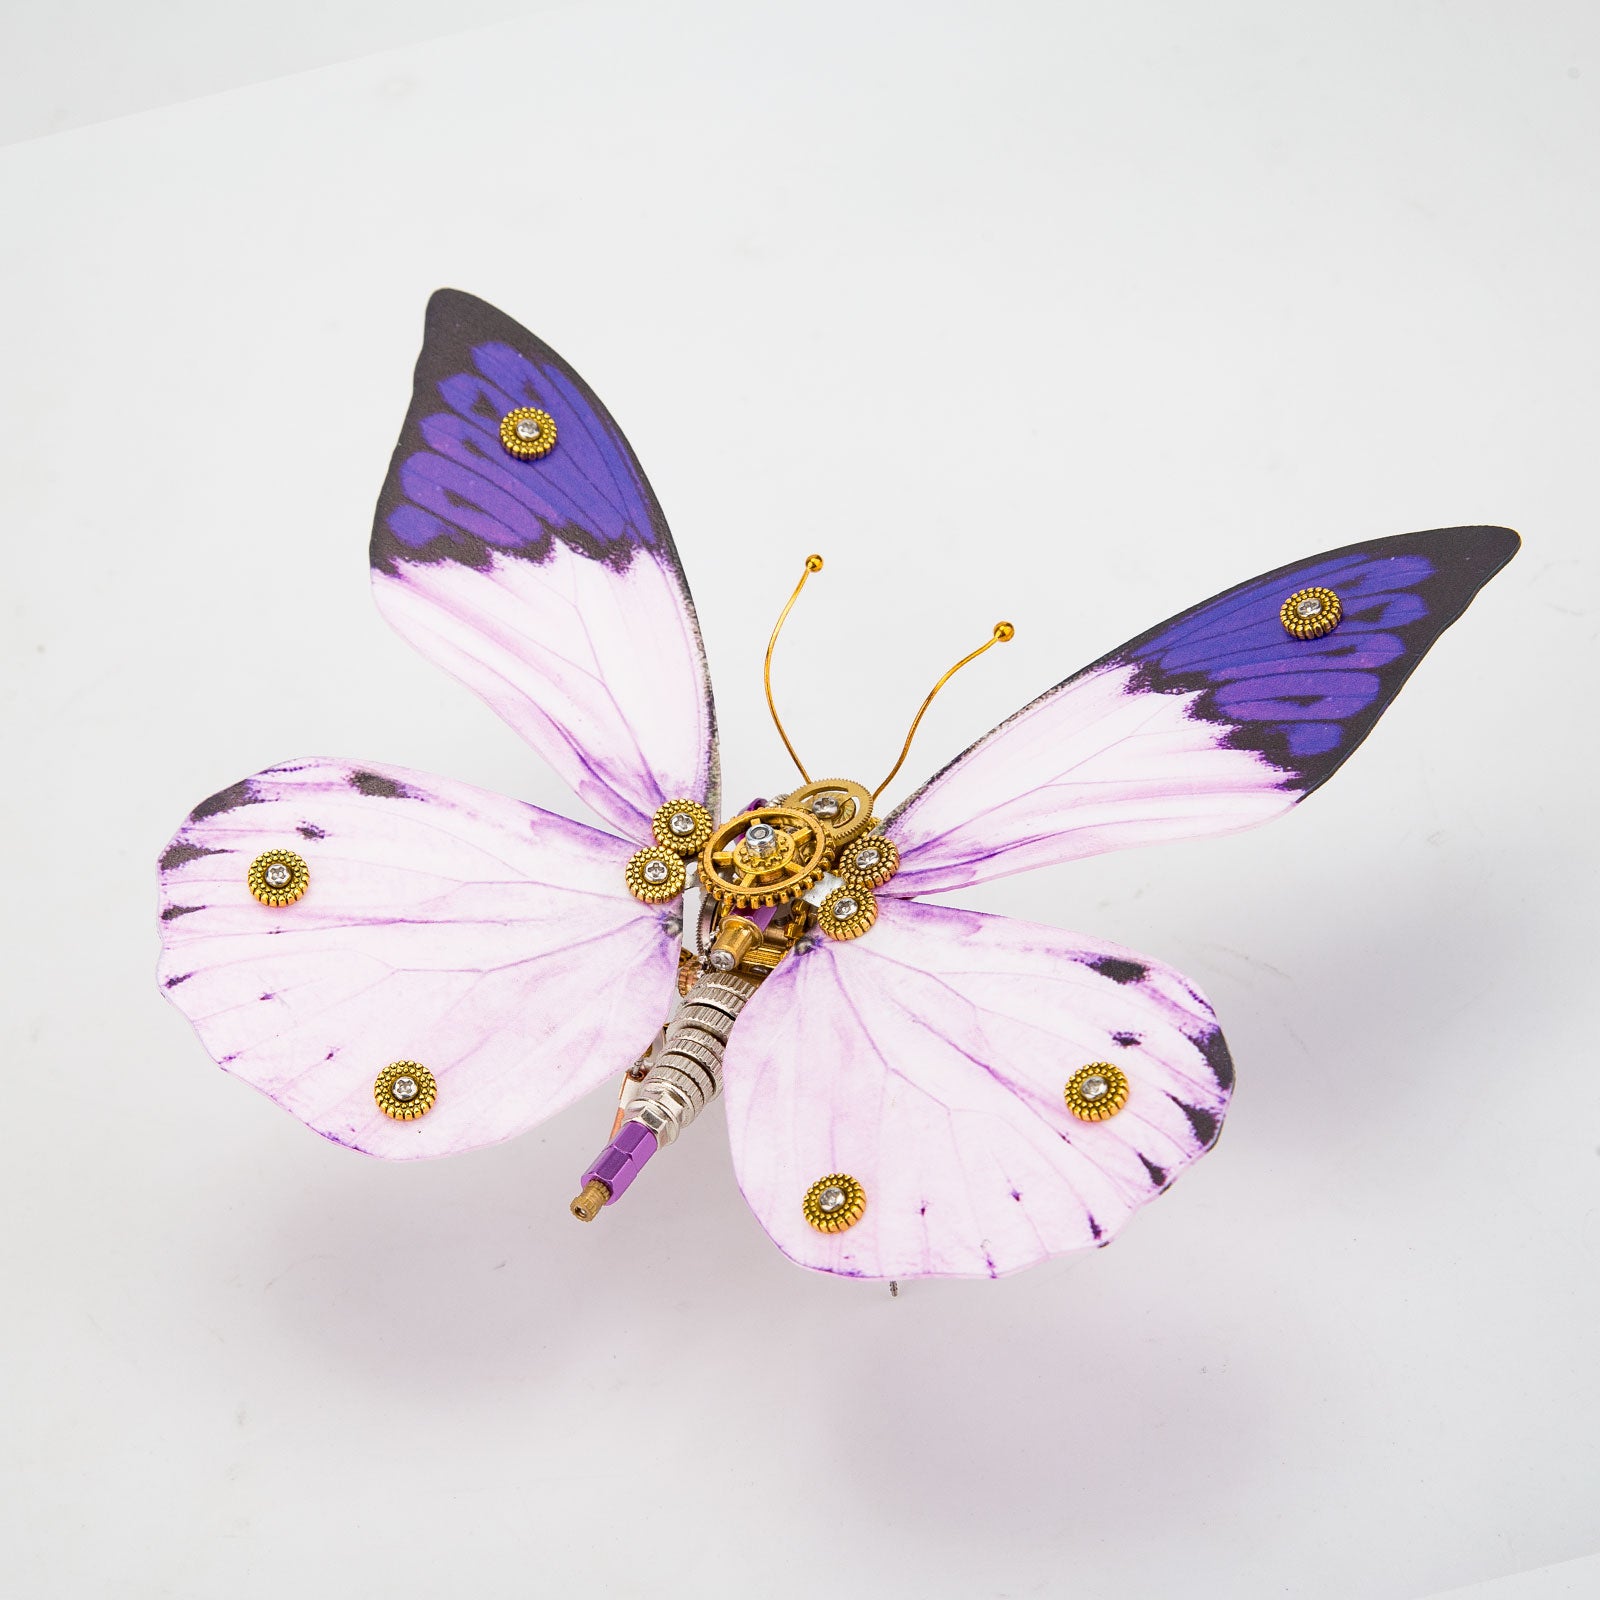 Steampunk 3D Metal Purple Butterfly Hebomoia Glaucippe Model DIY Kits